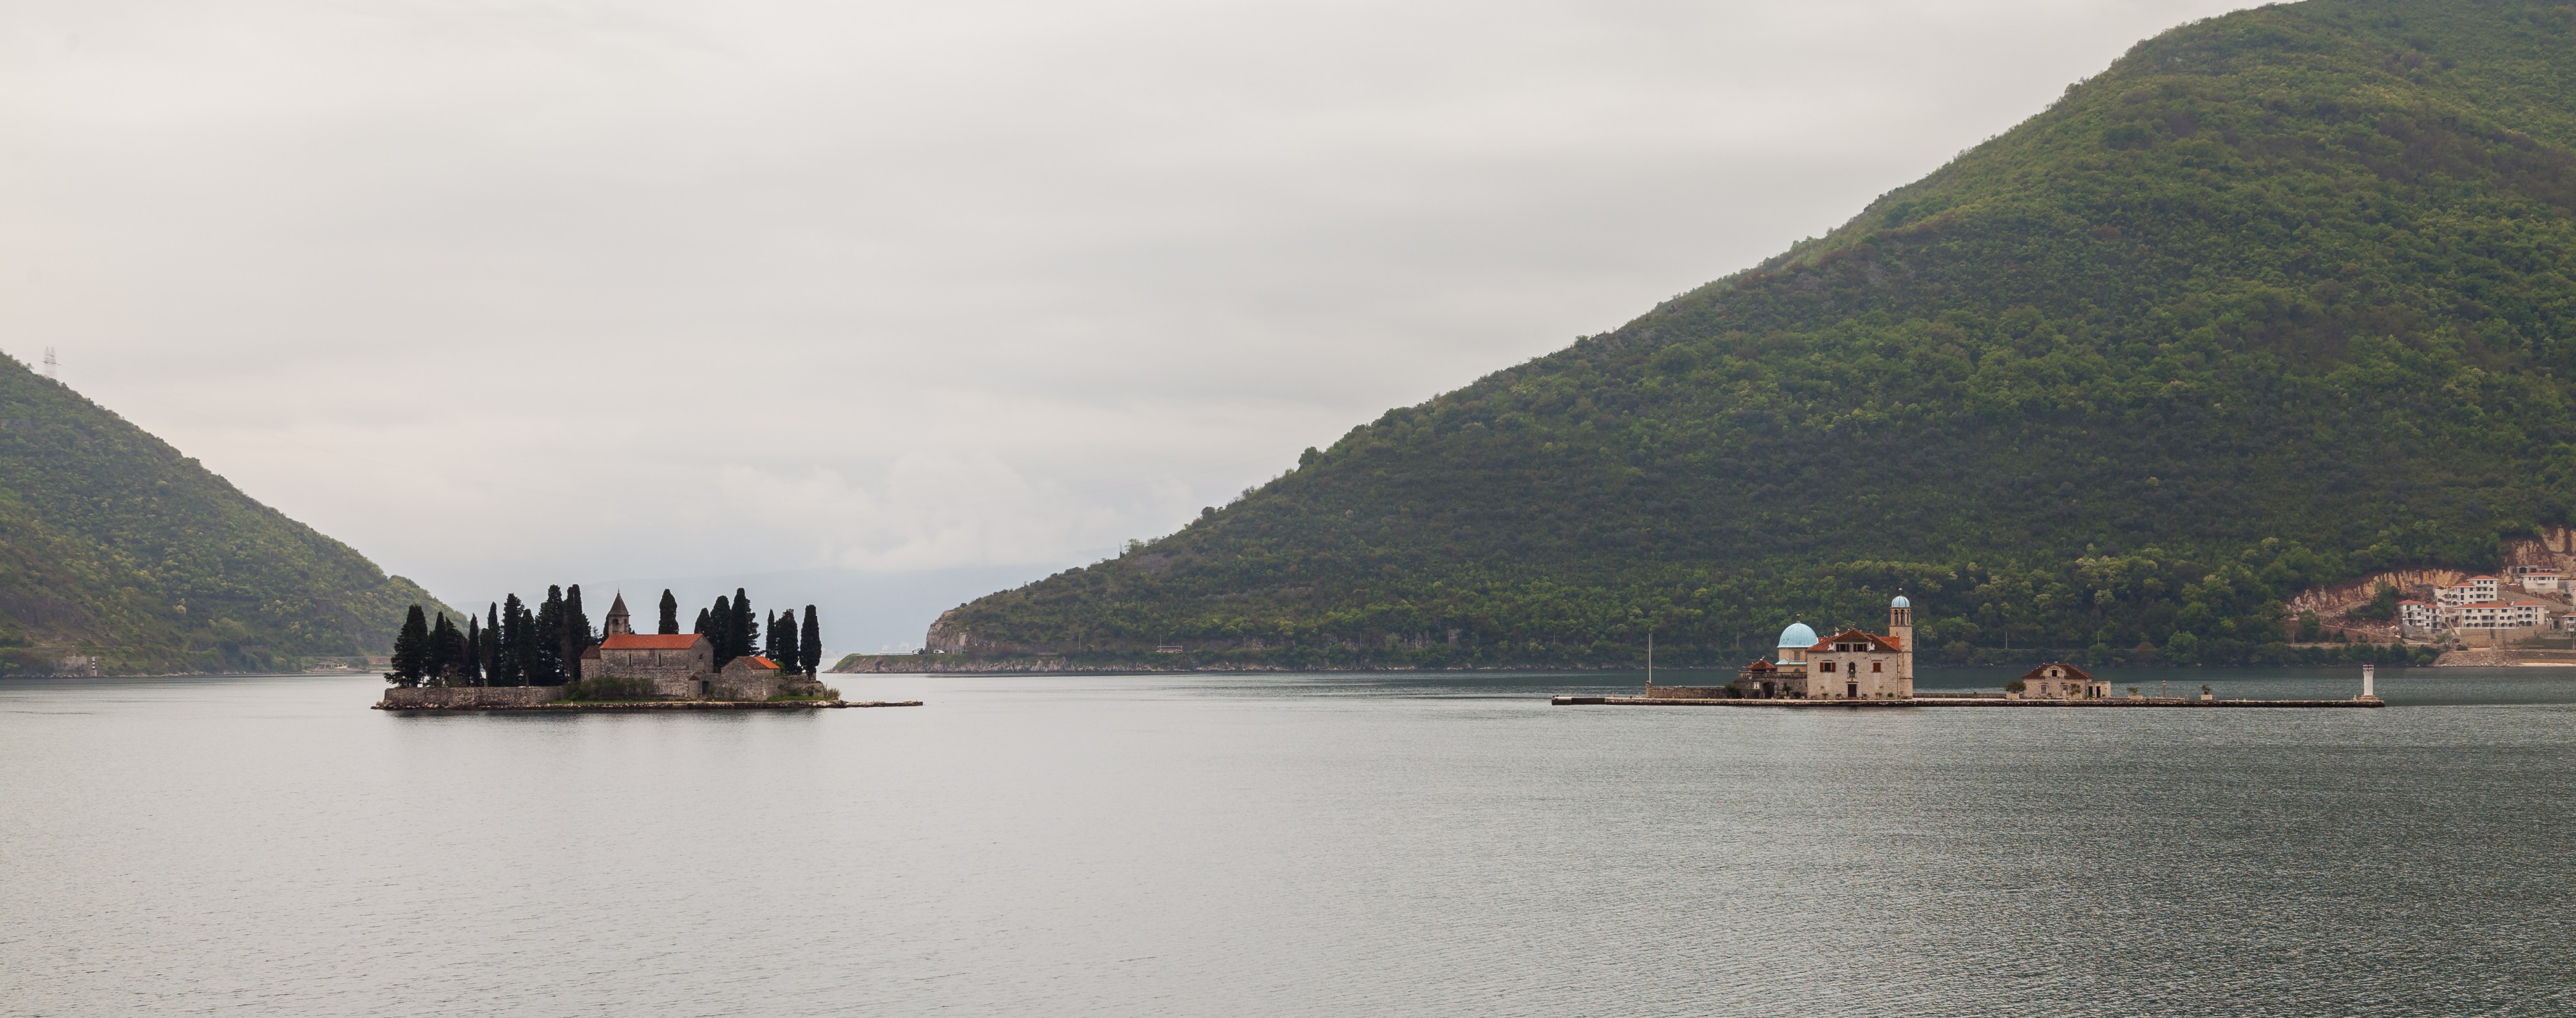 Nuestra Señora de las Rocas y Monasterio de San Jorge, Perast, Bahía de Kotor, Montenegro, 2014-04-19, DD 28